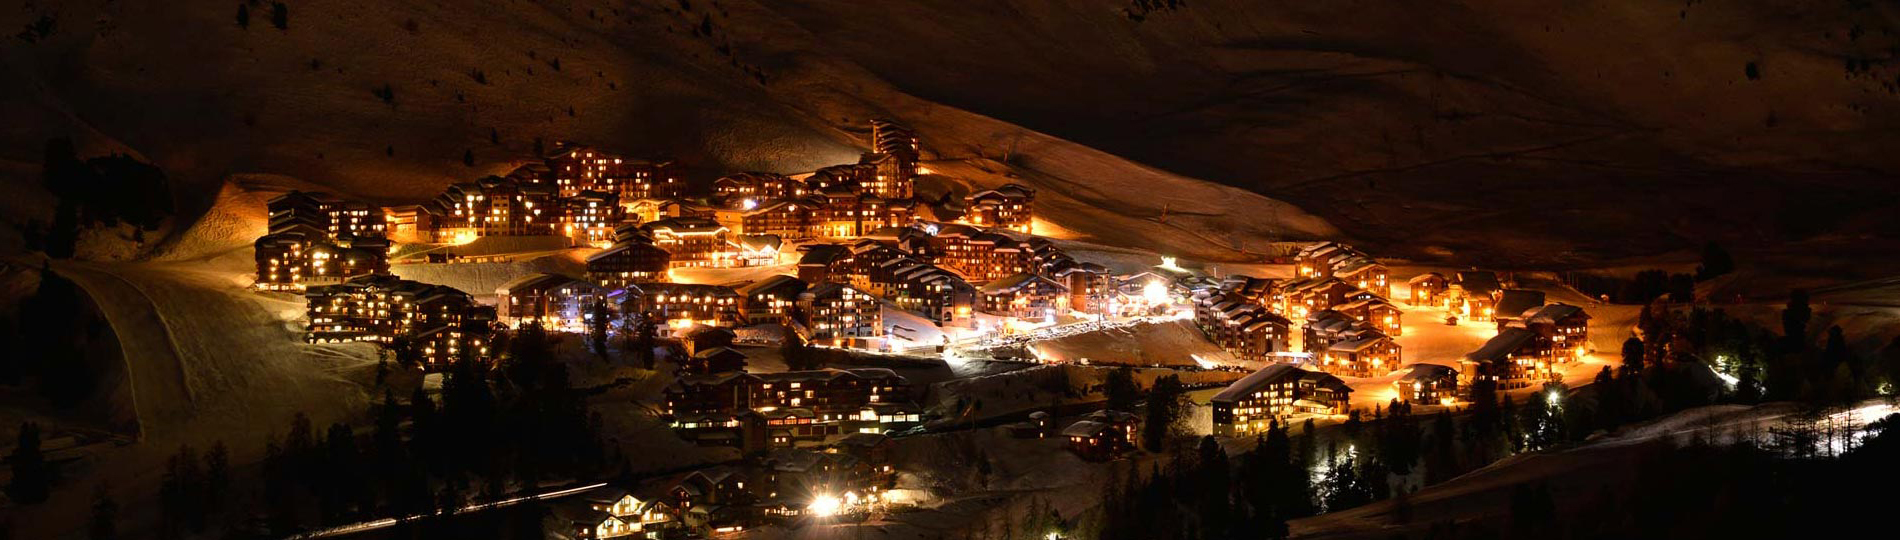 Station de ski La Plagne - village d'altitude